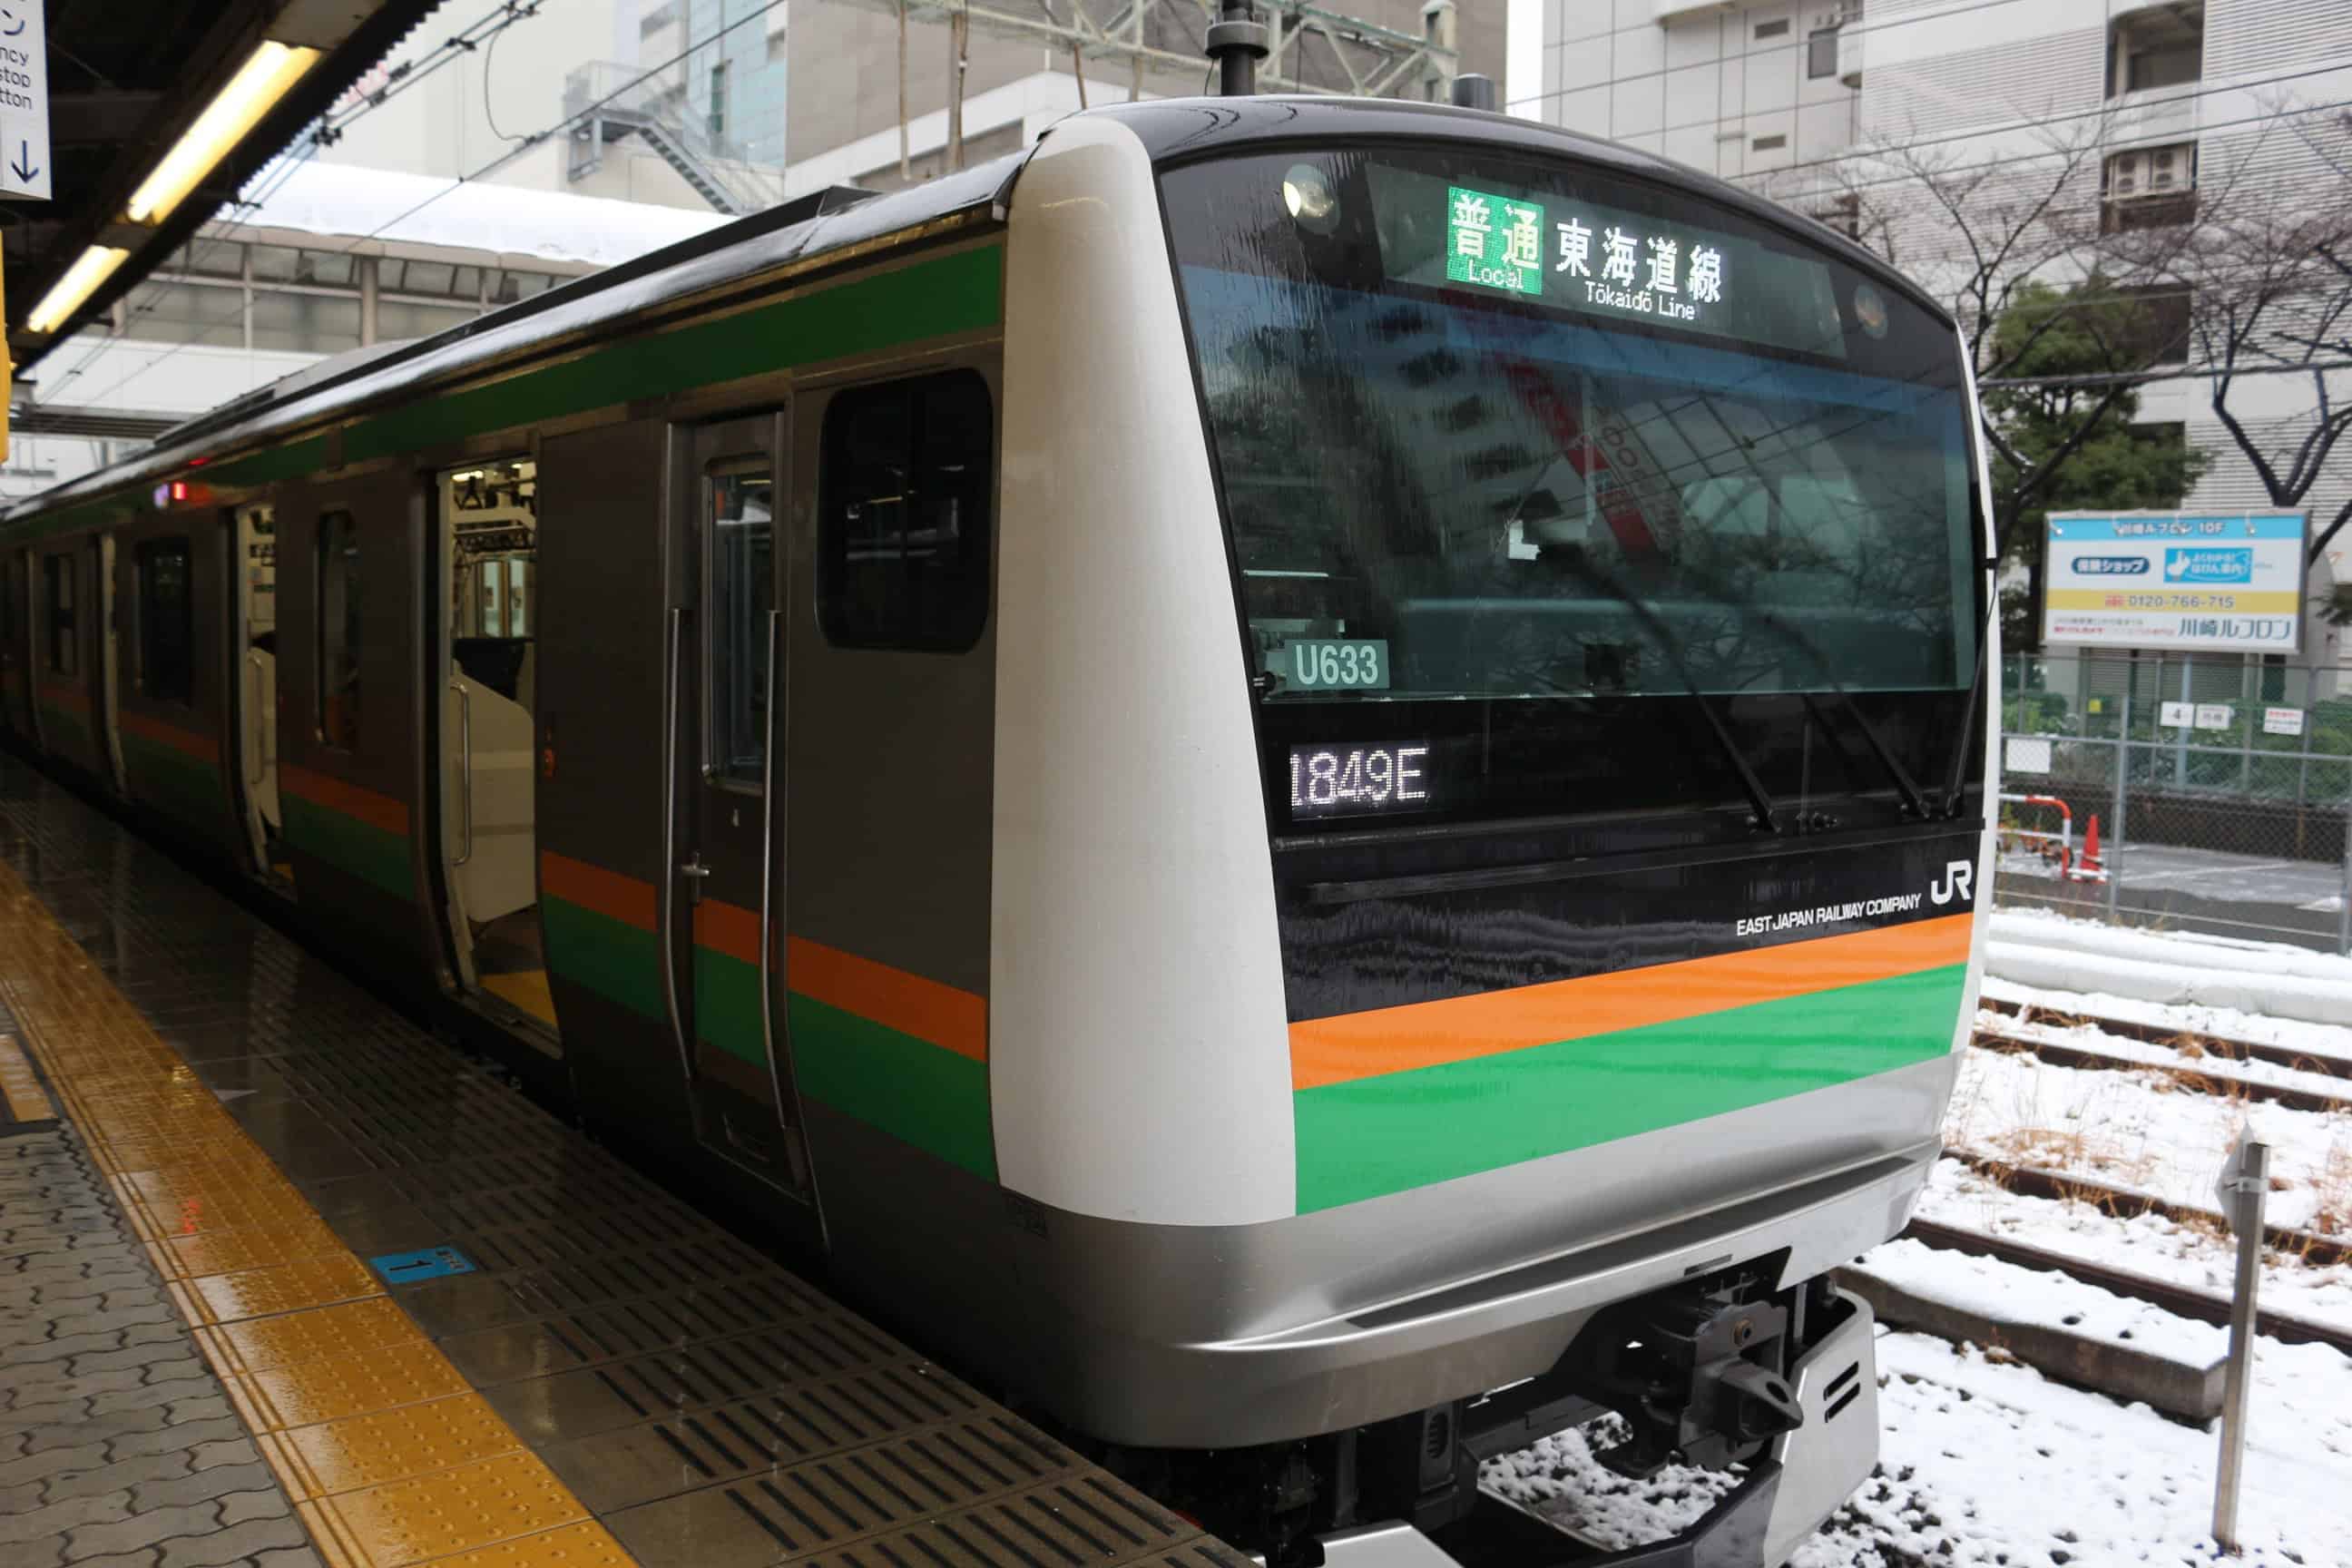 นั่งรถไฟฟ้า JR ไปปราสาทโอดาวาระ (Odawara)